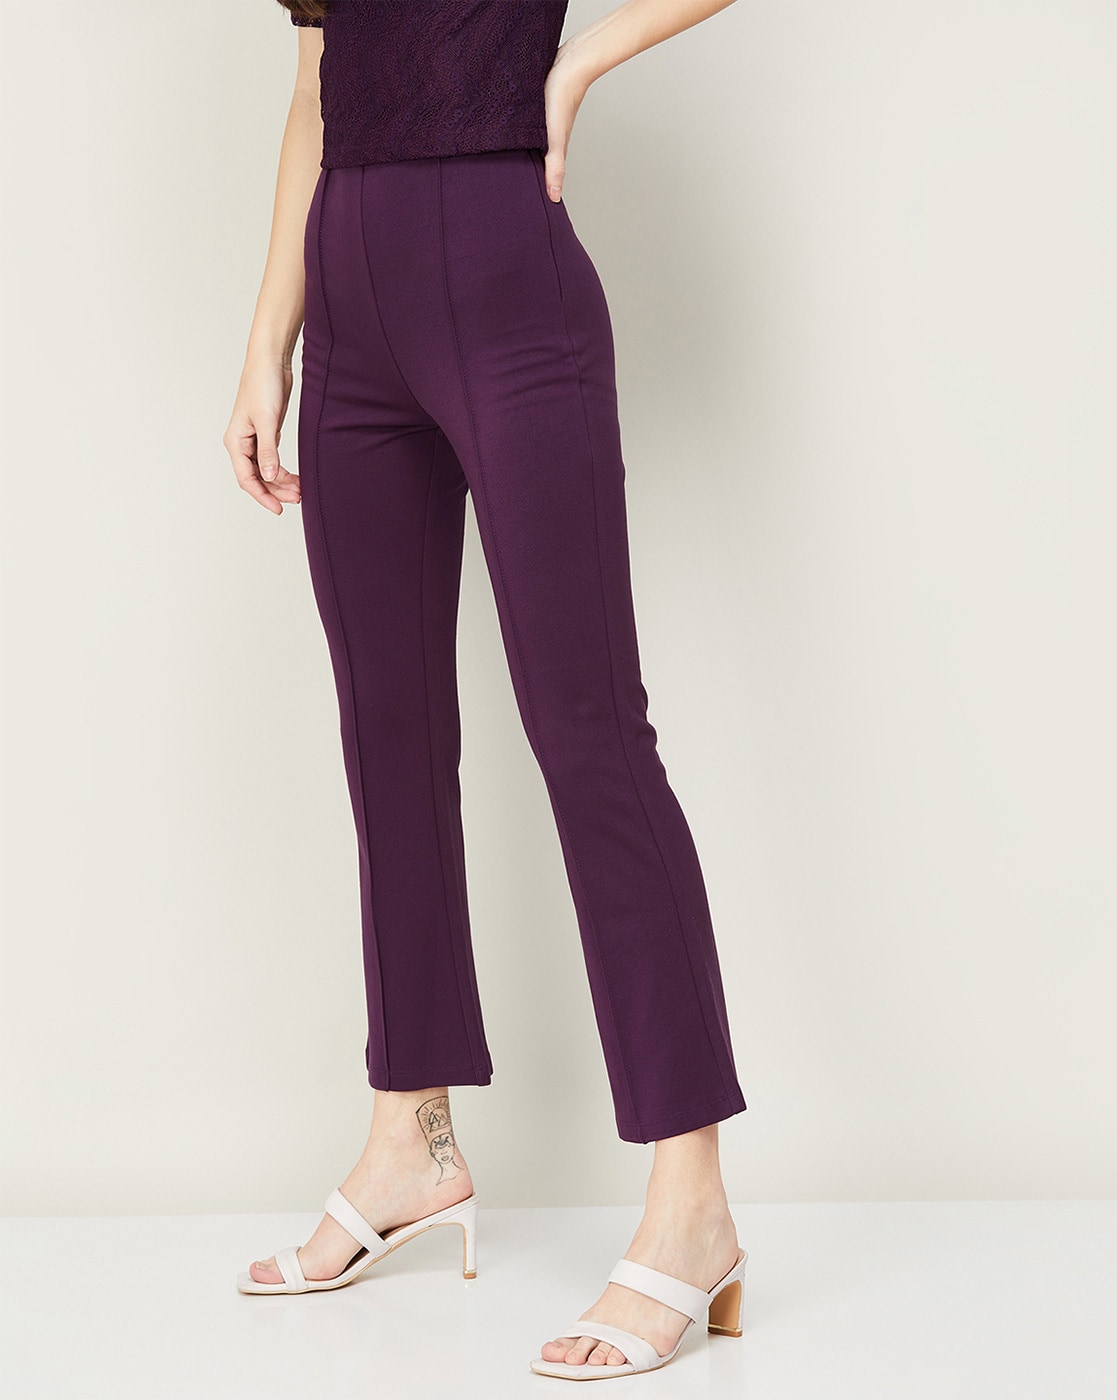 Flirtitude Purple Active Pants Size XL - 42% off